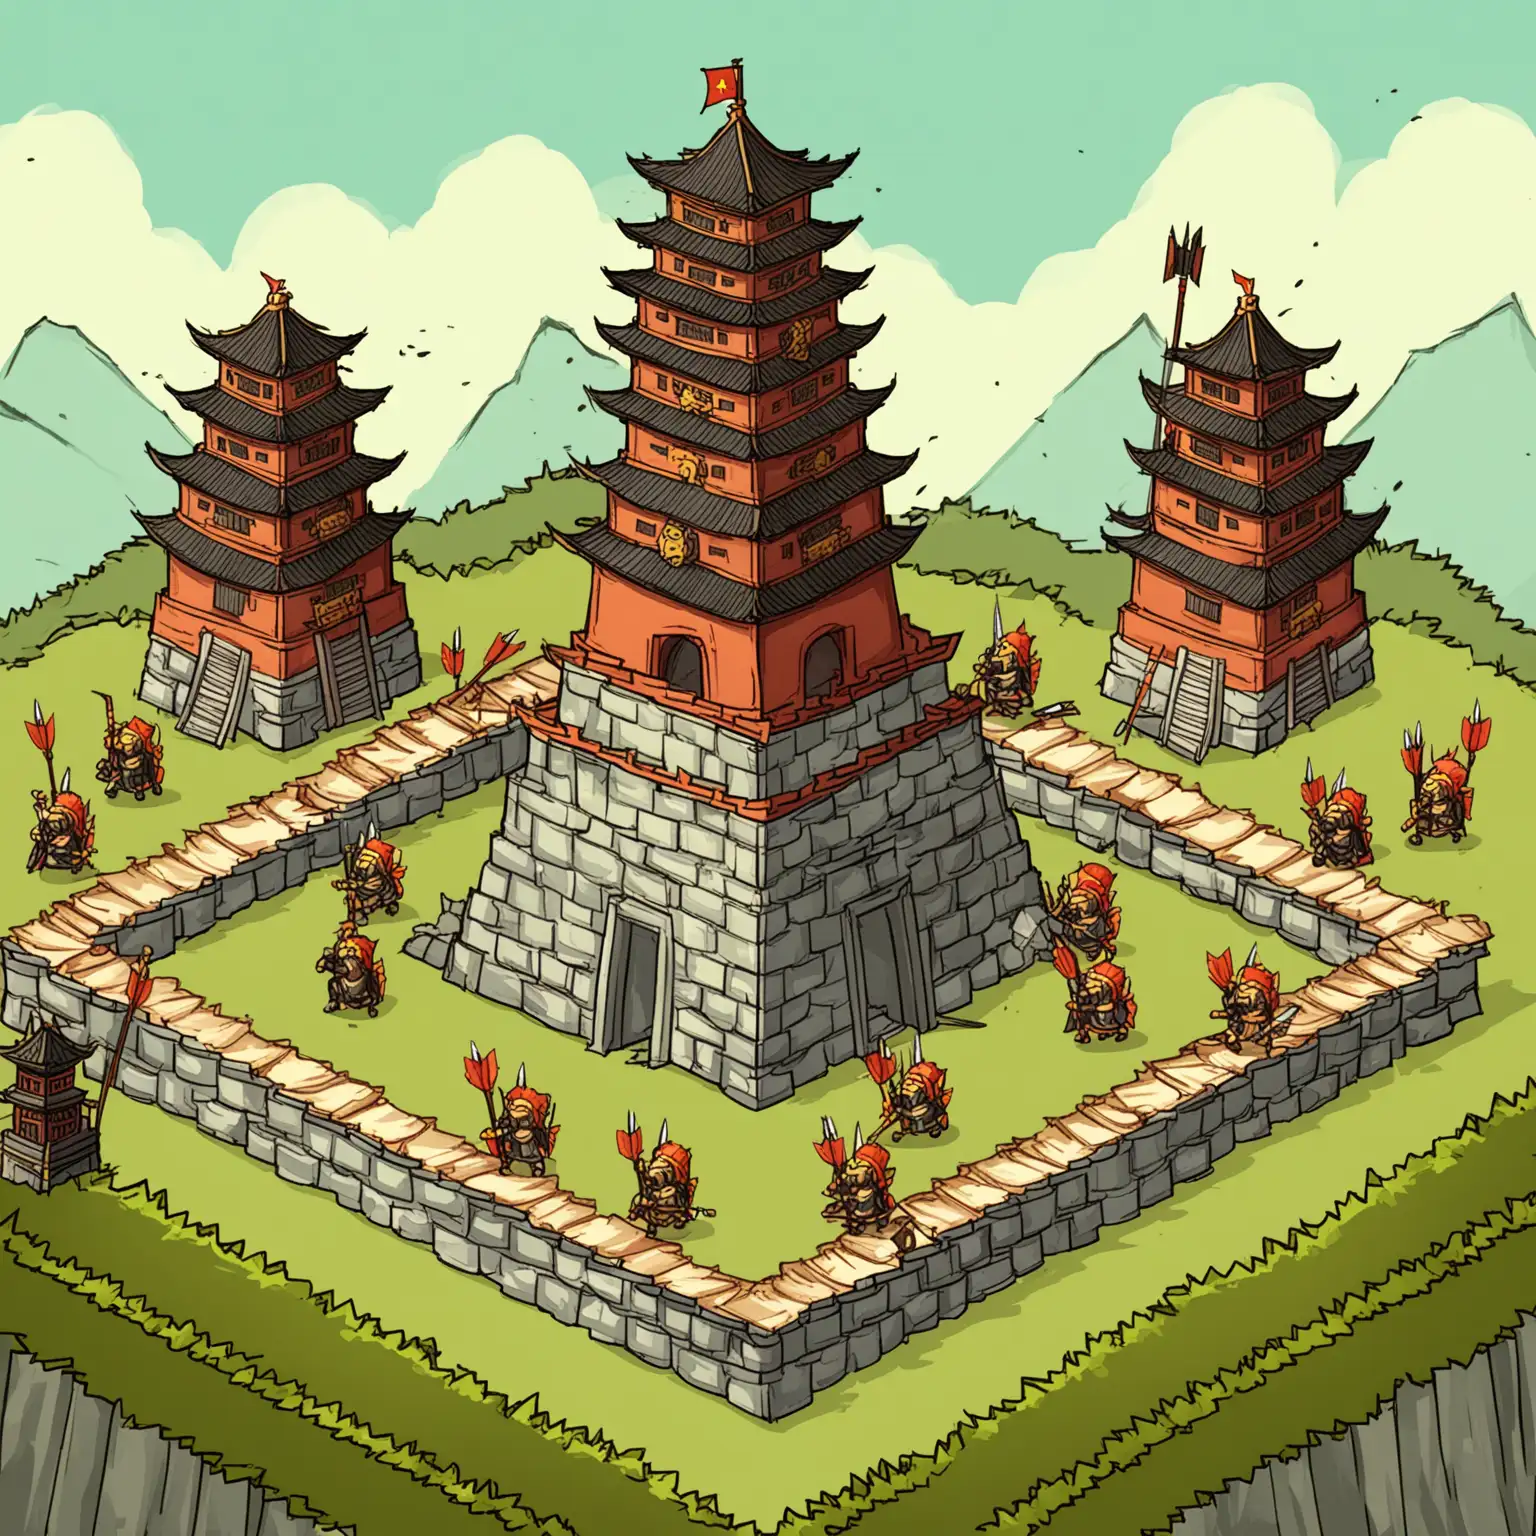 2D 游戏,塔防,干净的背景,塔,中式风格,三国时期,箭塔